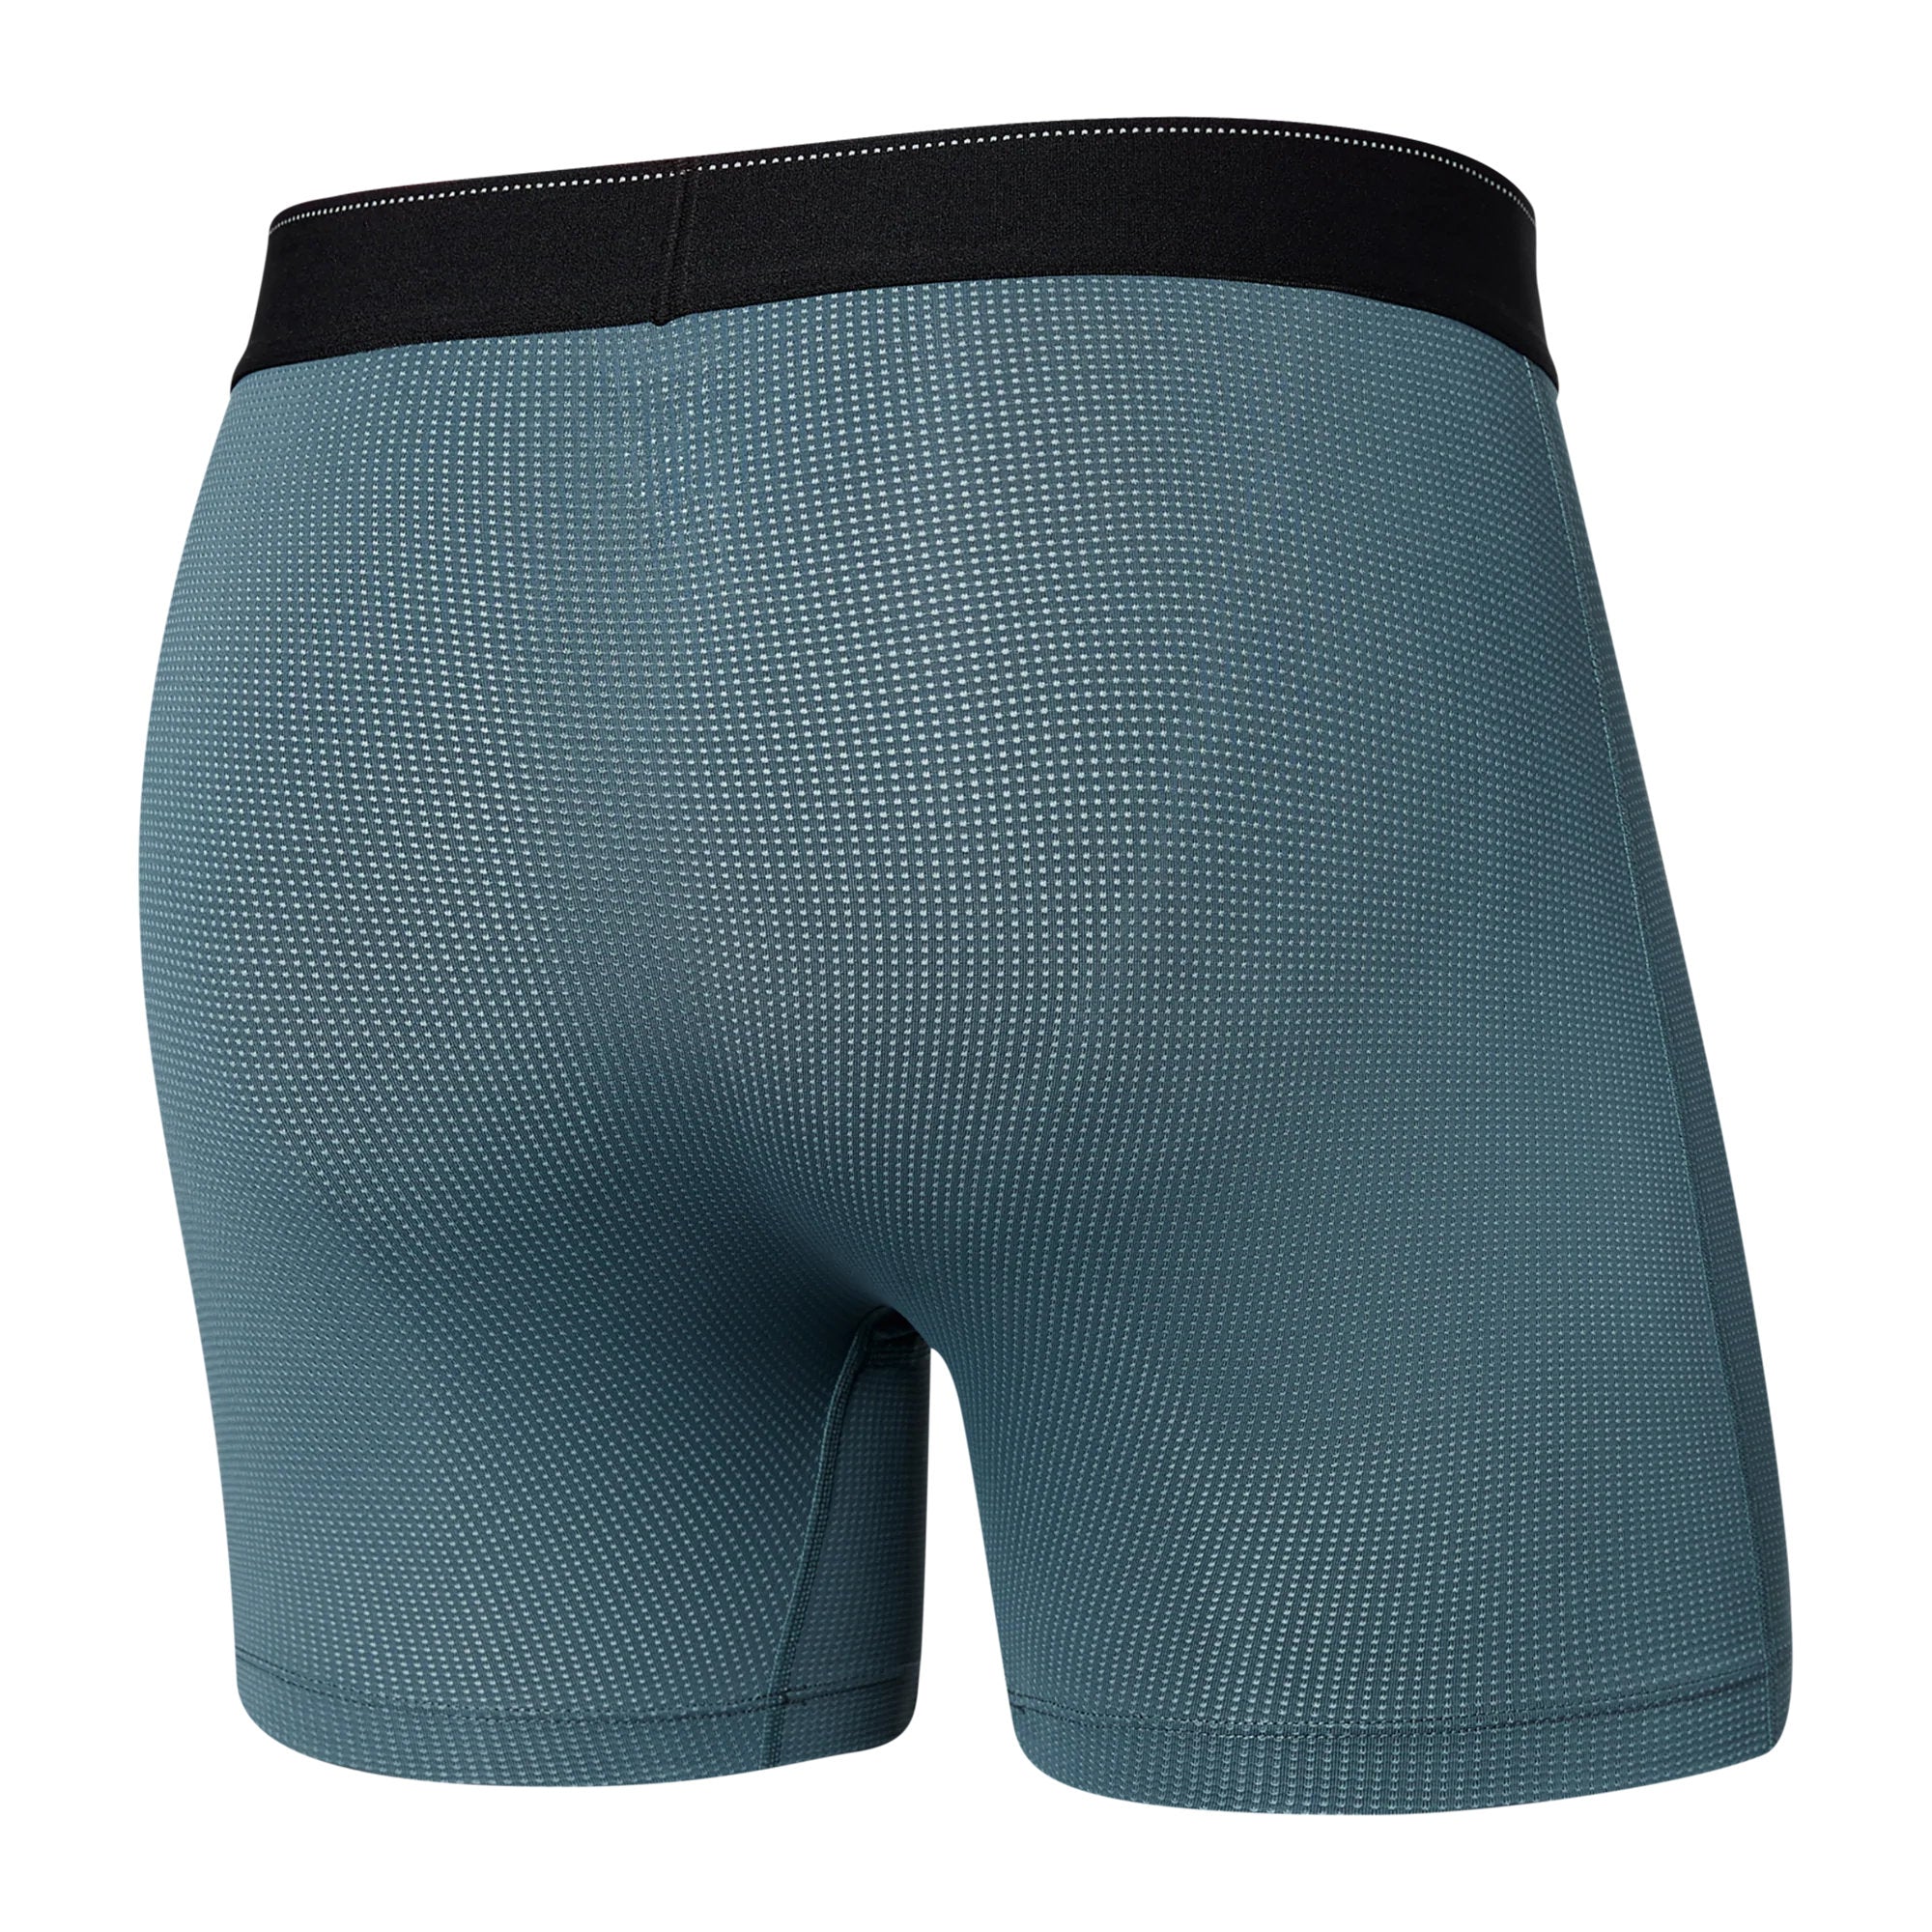 Saxx Quest Blue Daybreak Stripe Boxer Briefs - Nowells Clothiers